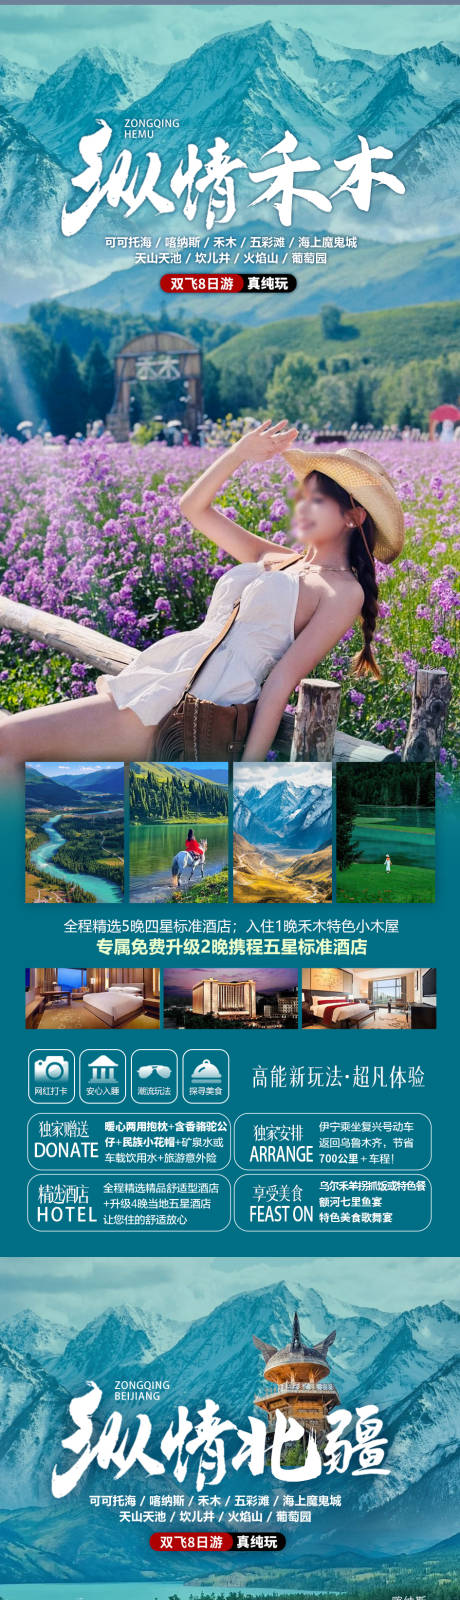 新疆旅游系列海报